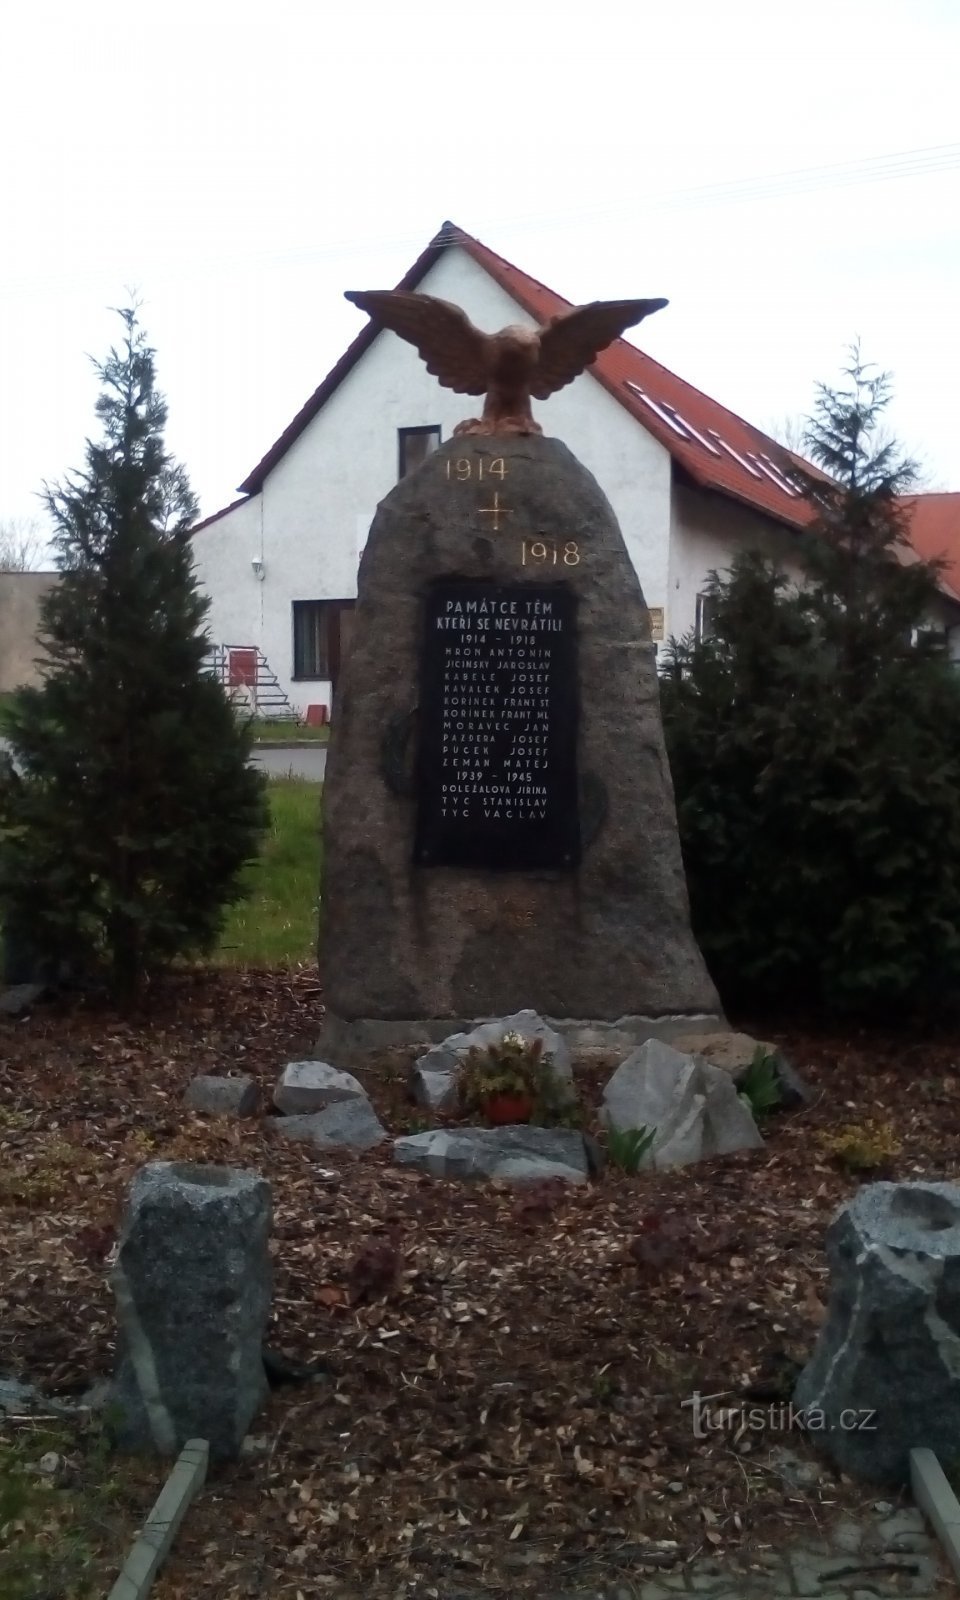 Monument voor de gevallenen in Dražkovice